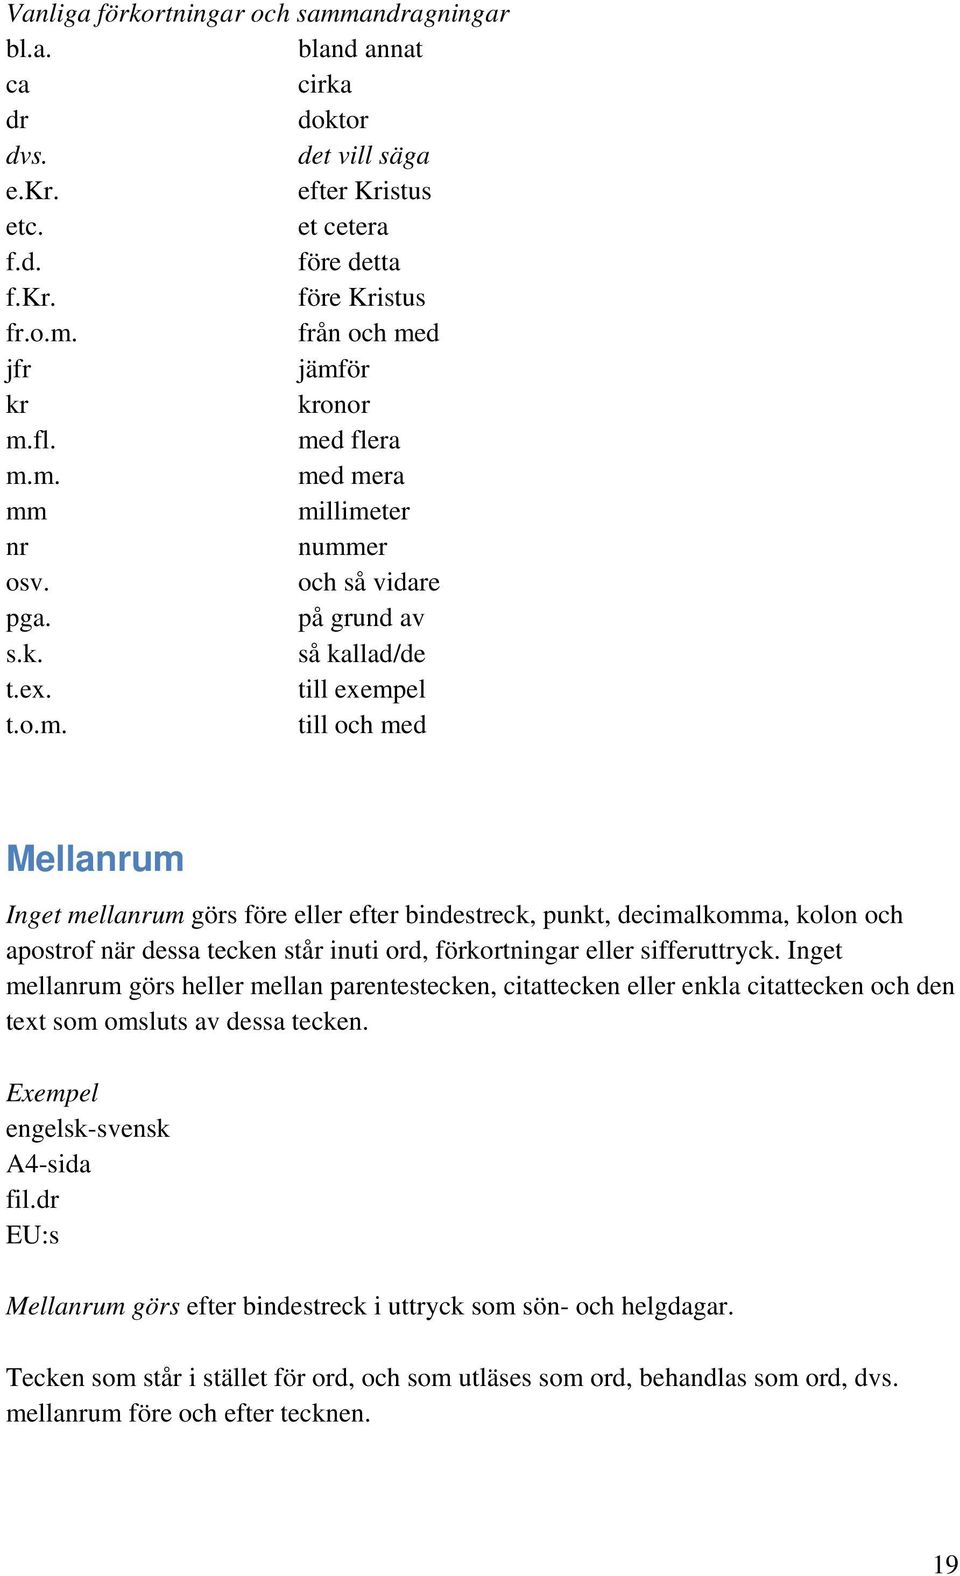 Inget mellanrum görs heller mellan parentestecken, citattecken eller enkla citattecken och den text som omsluts av dessa tecken. engelsk-svensk A4-sida fil.